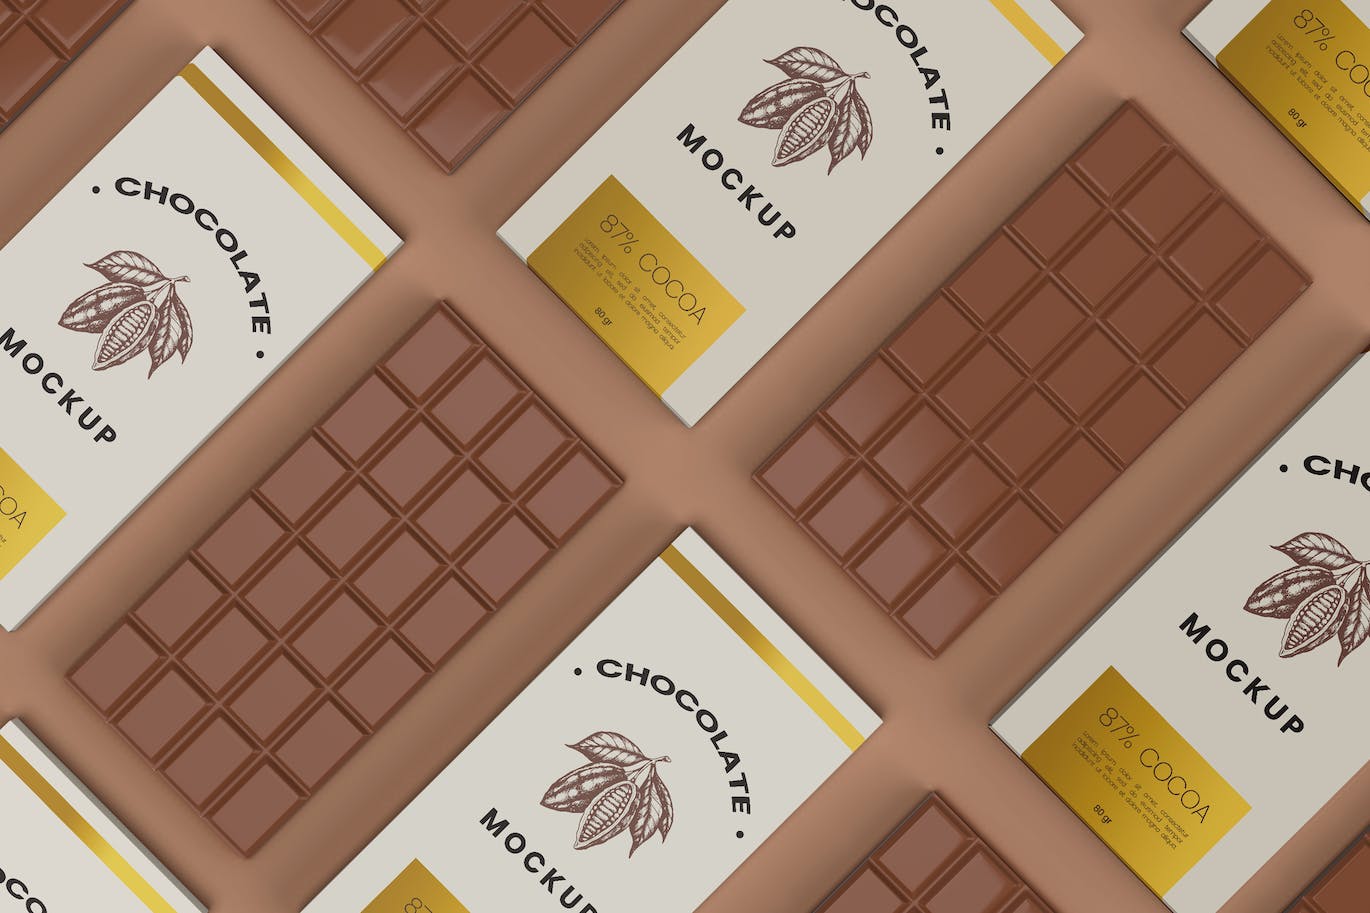 巧克力棒食品包装设计样机 Realistic Chocolate Bar Packaging Mockup 5 Views 样机素材 第6张